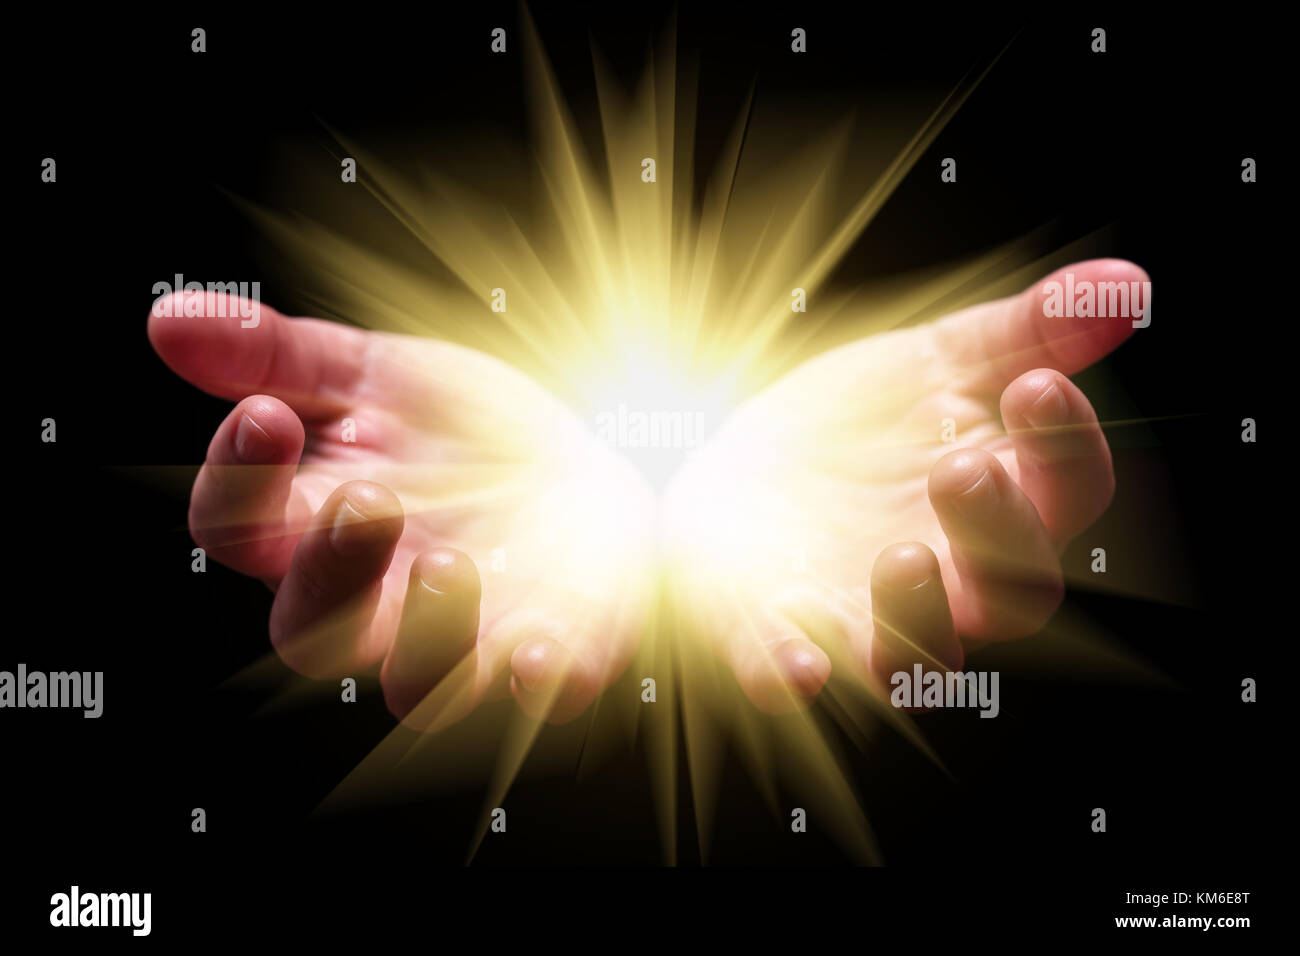 Frau Hände schalenförmig Holding angezeigt, die hell leuchtende strahlend leuchtende Leuchtdioden strahlen strahlen Religion göttlichen Himmlischen himmlischen Urknall Stockfoto